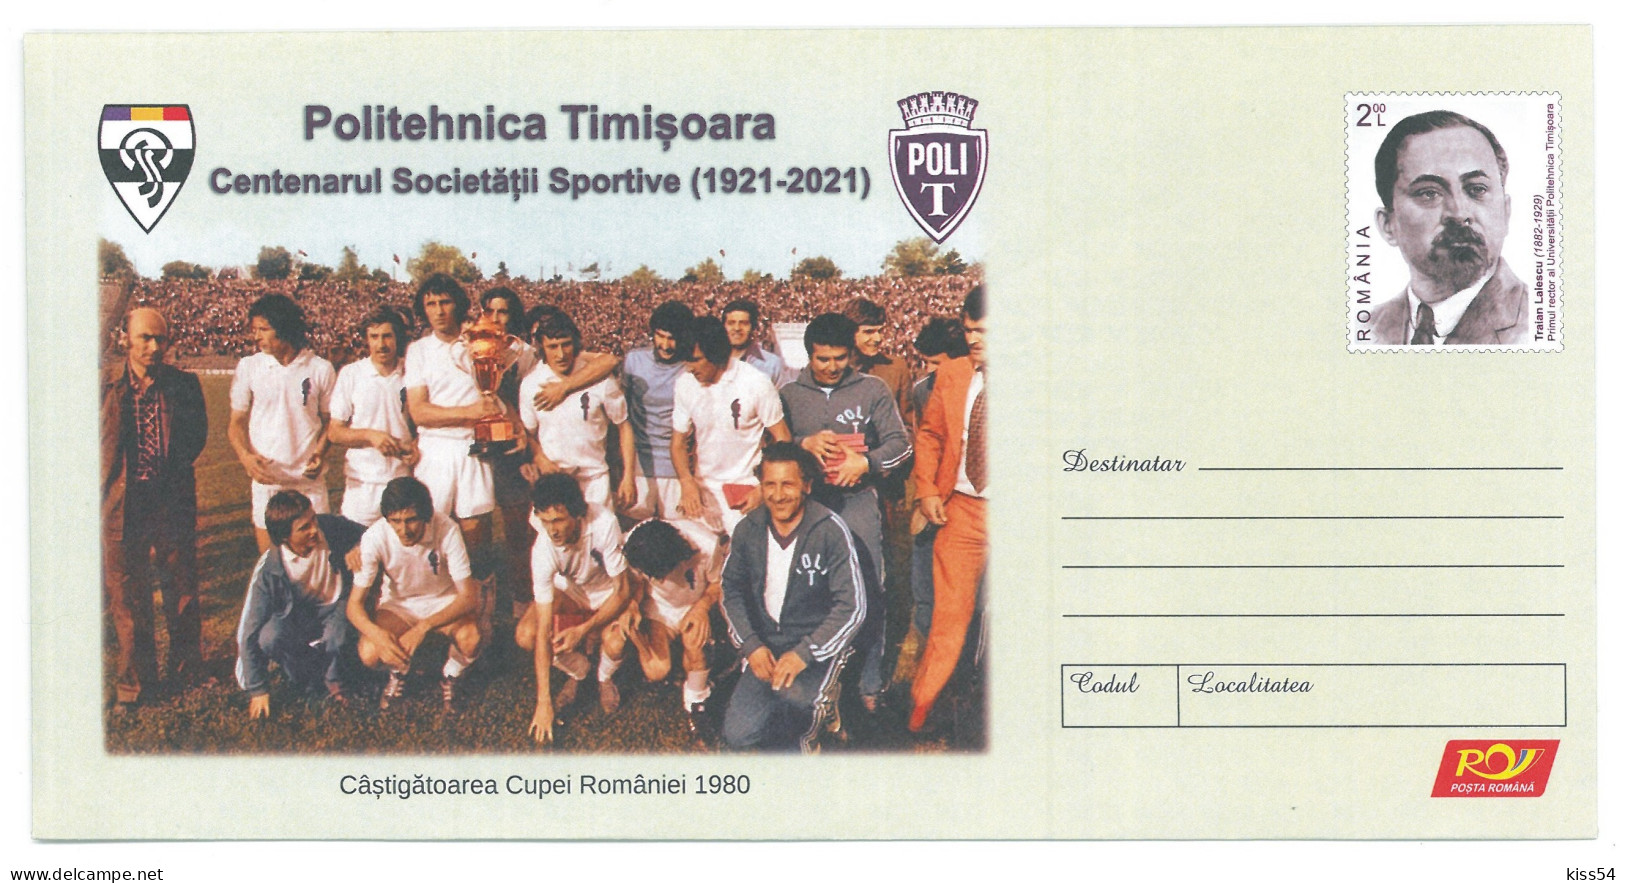 IP 2021 - 48 FOOTBALL, POLI TIMISOARA Football Team, Romania - Stationery - Unused - 2021 - Postal Stationery